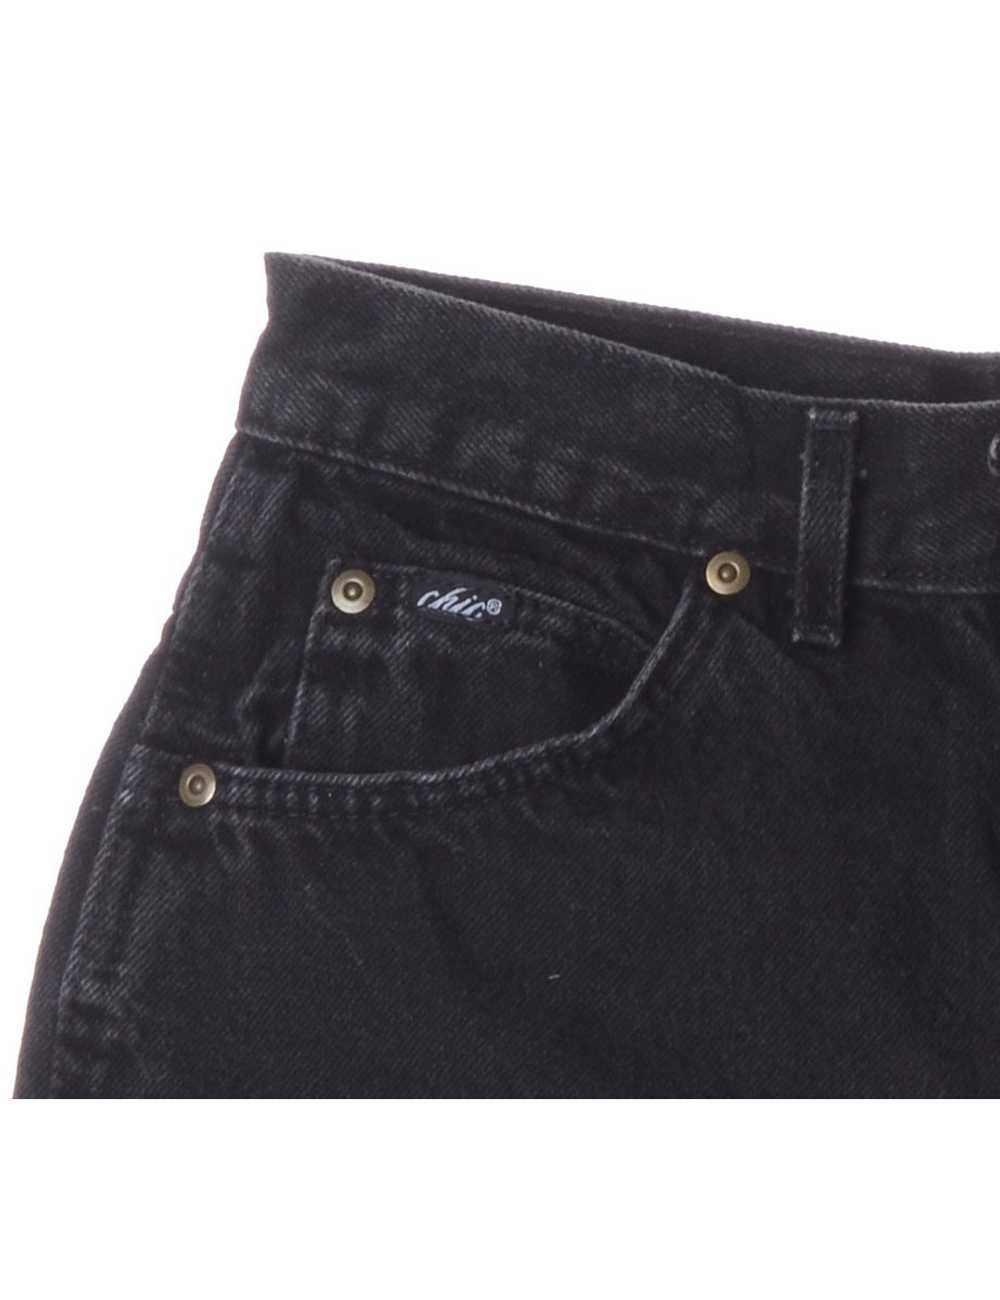 Label GRL PWR Embroidered Denim Shorts - image 3